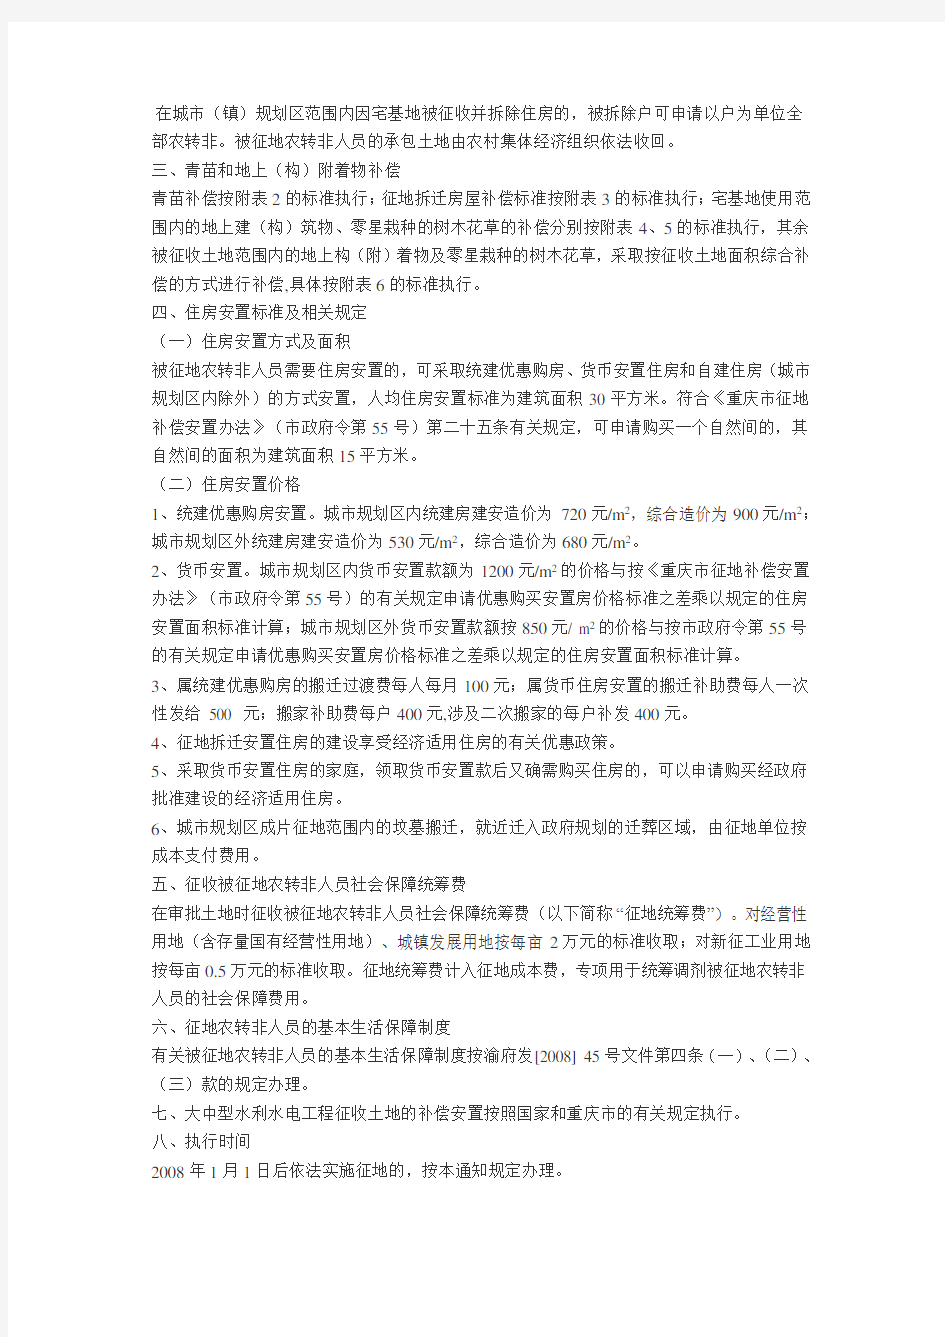 重庆市万州区人民政府关于调整征地补偿安置标准做好征地补偿安置工作的通知